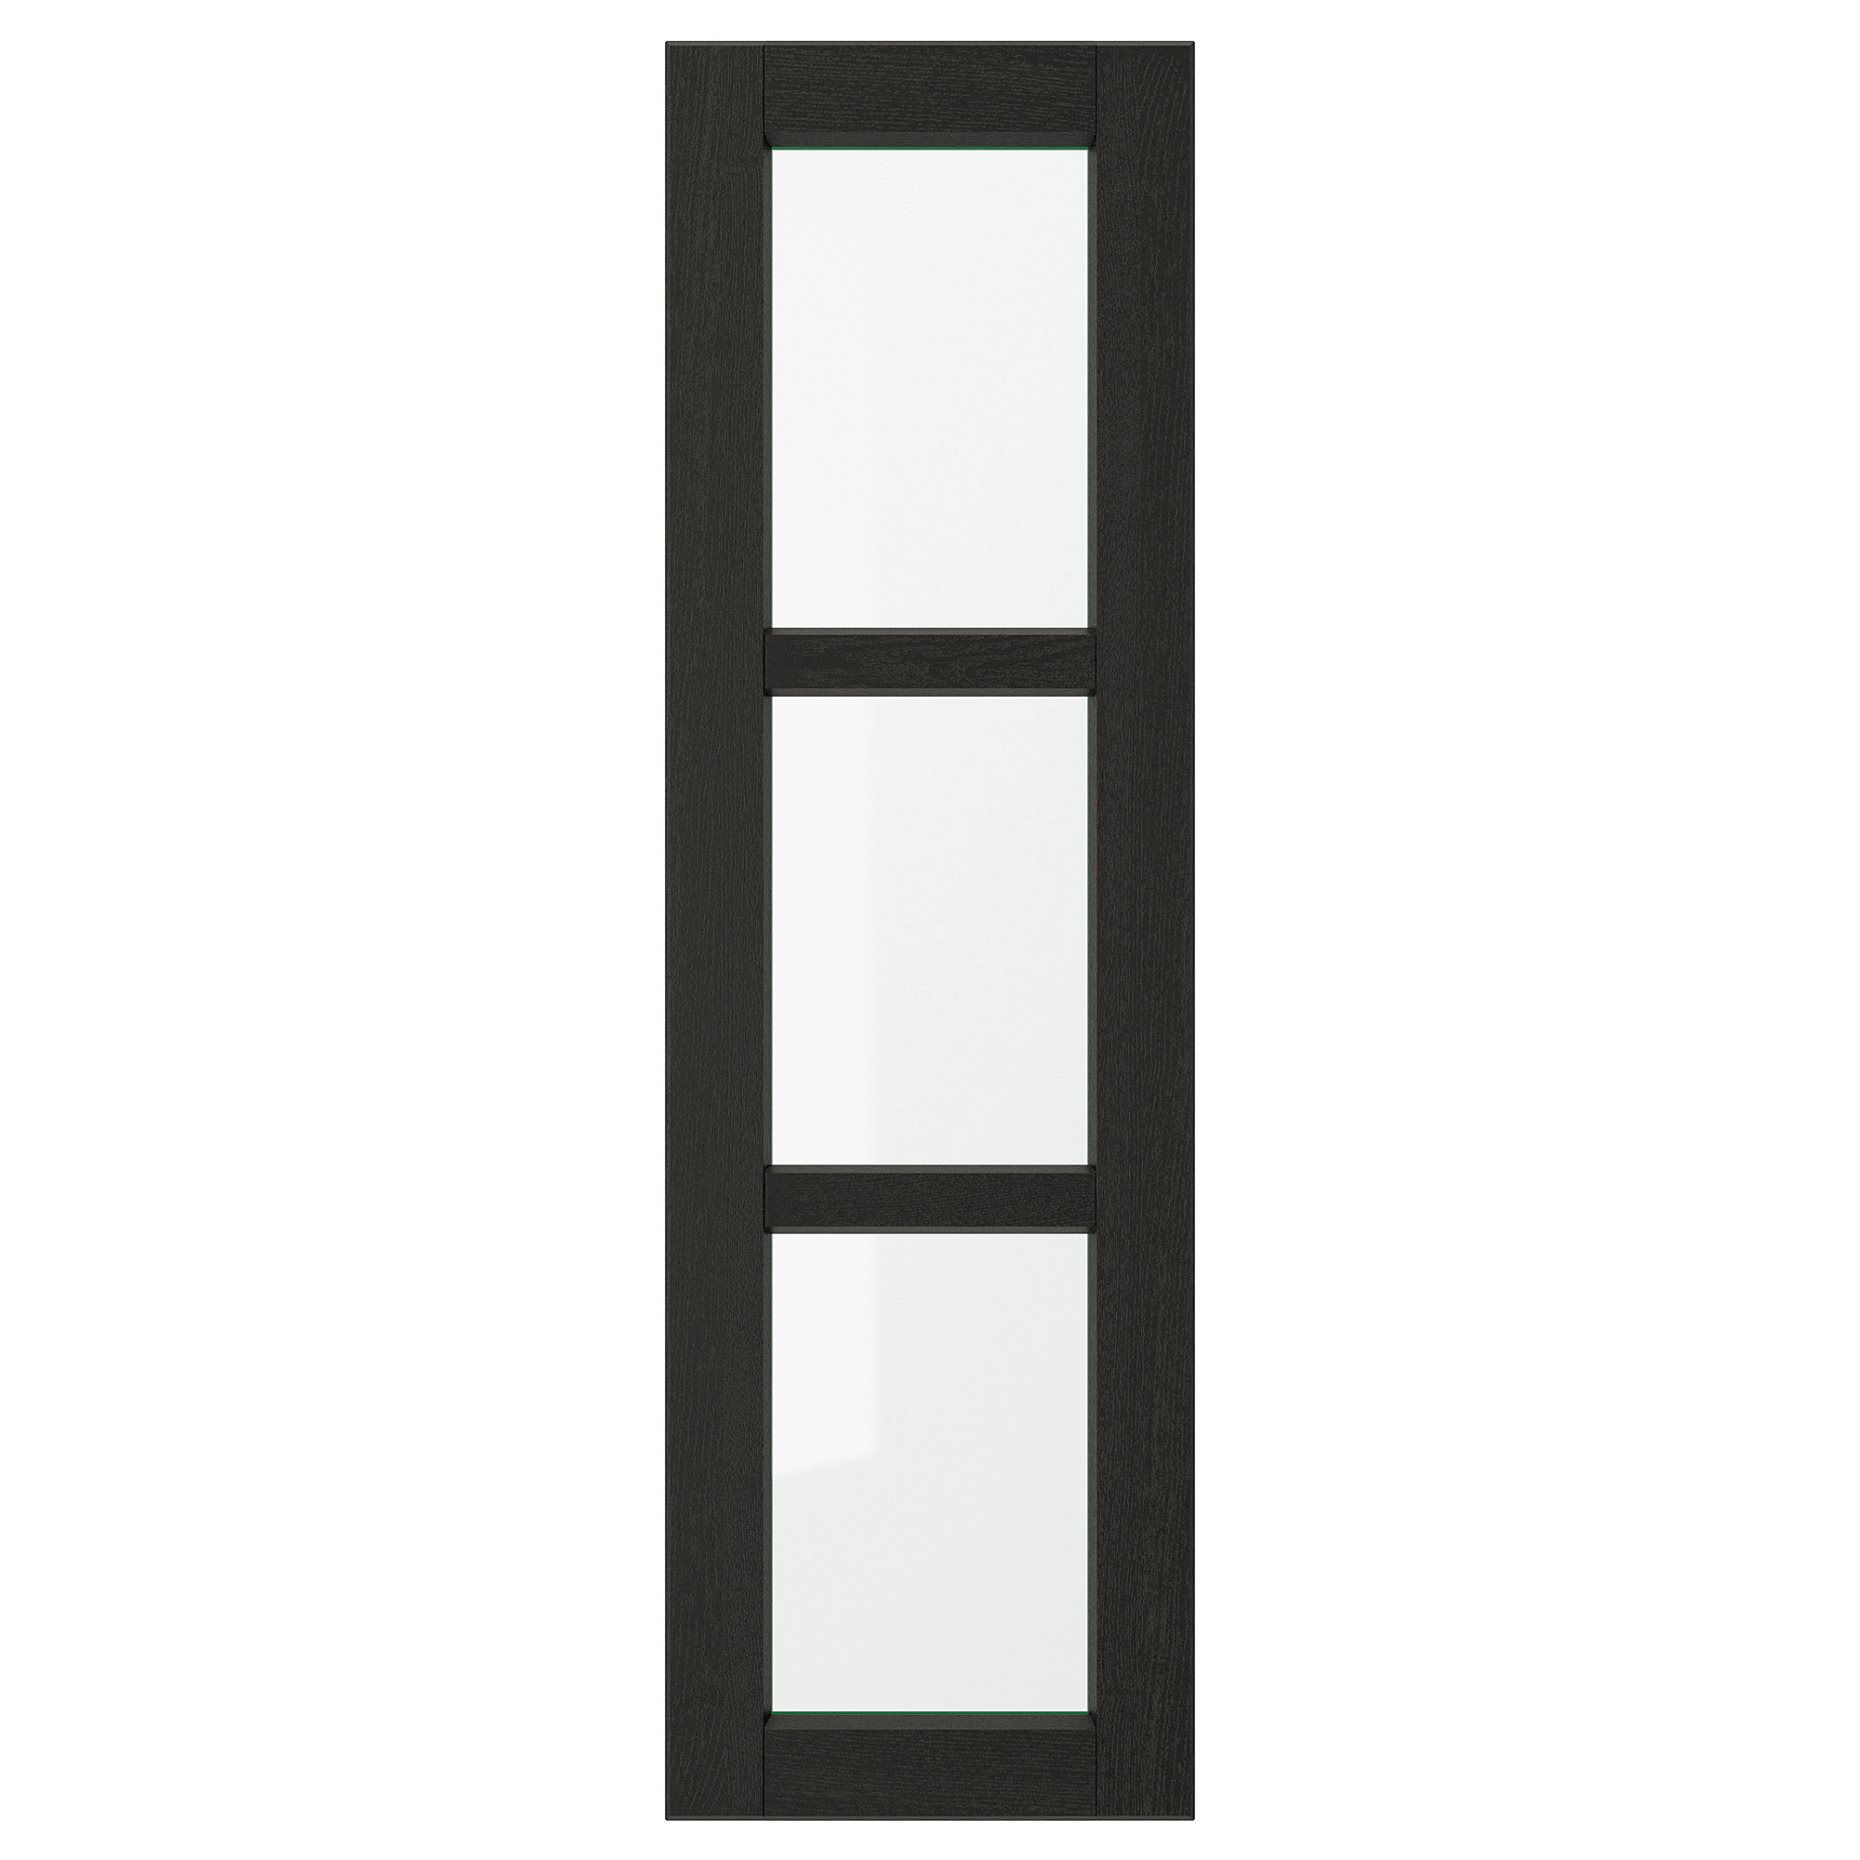 LERHYTTAN, glass door, 803.560.77